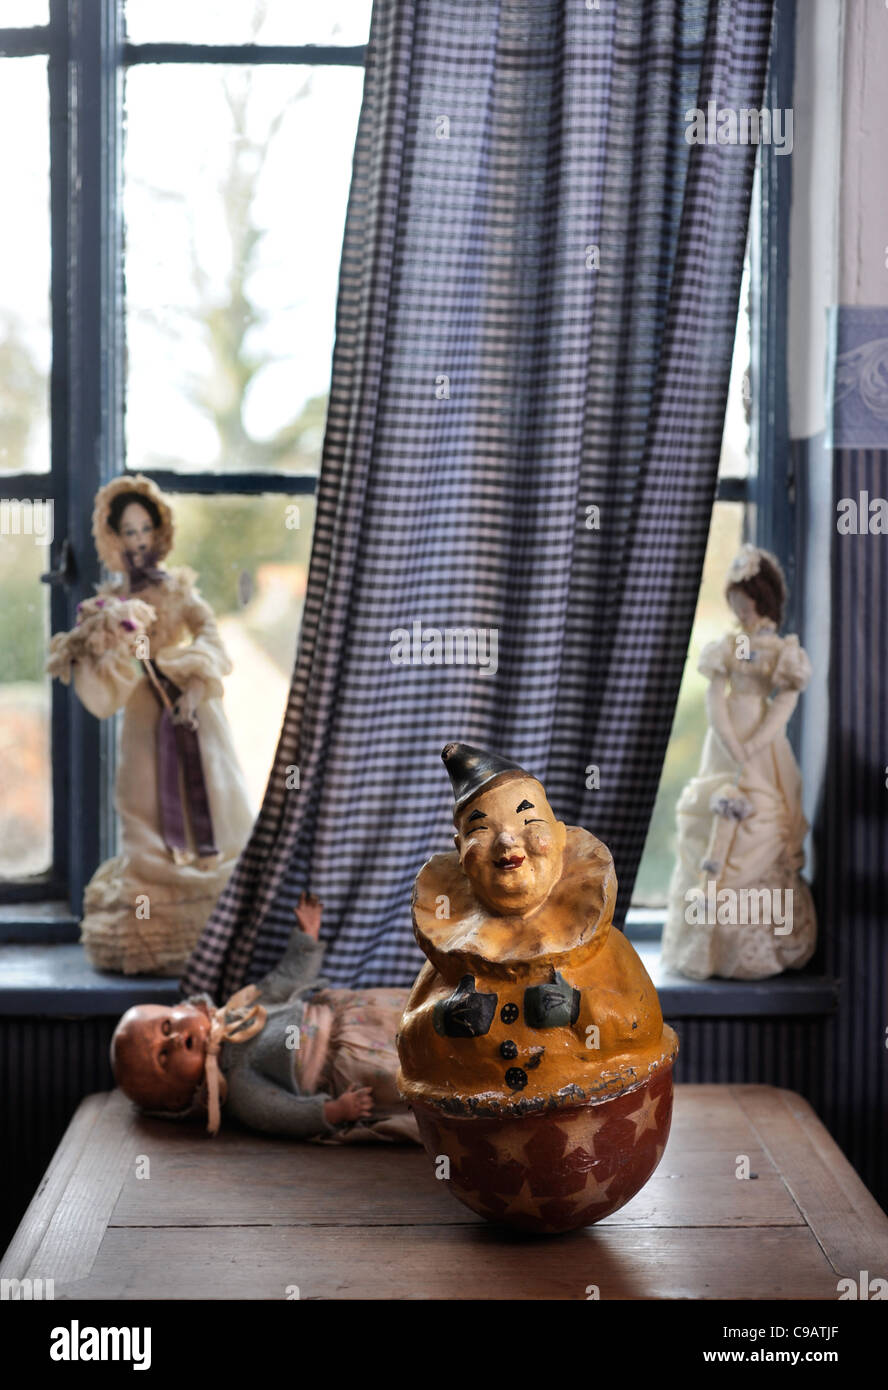 Die Shambles Victorian Village in Newent, Gloucestershire - ein Museum der Victoriana - Puppen und Marionetten in einem Spielzeugladen Stockfoto